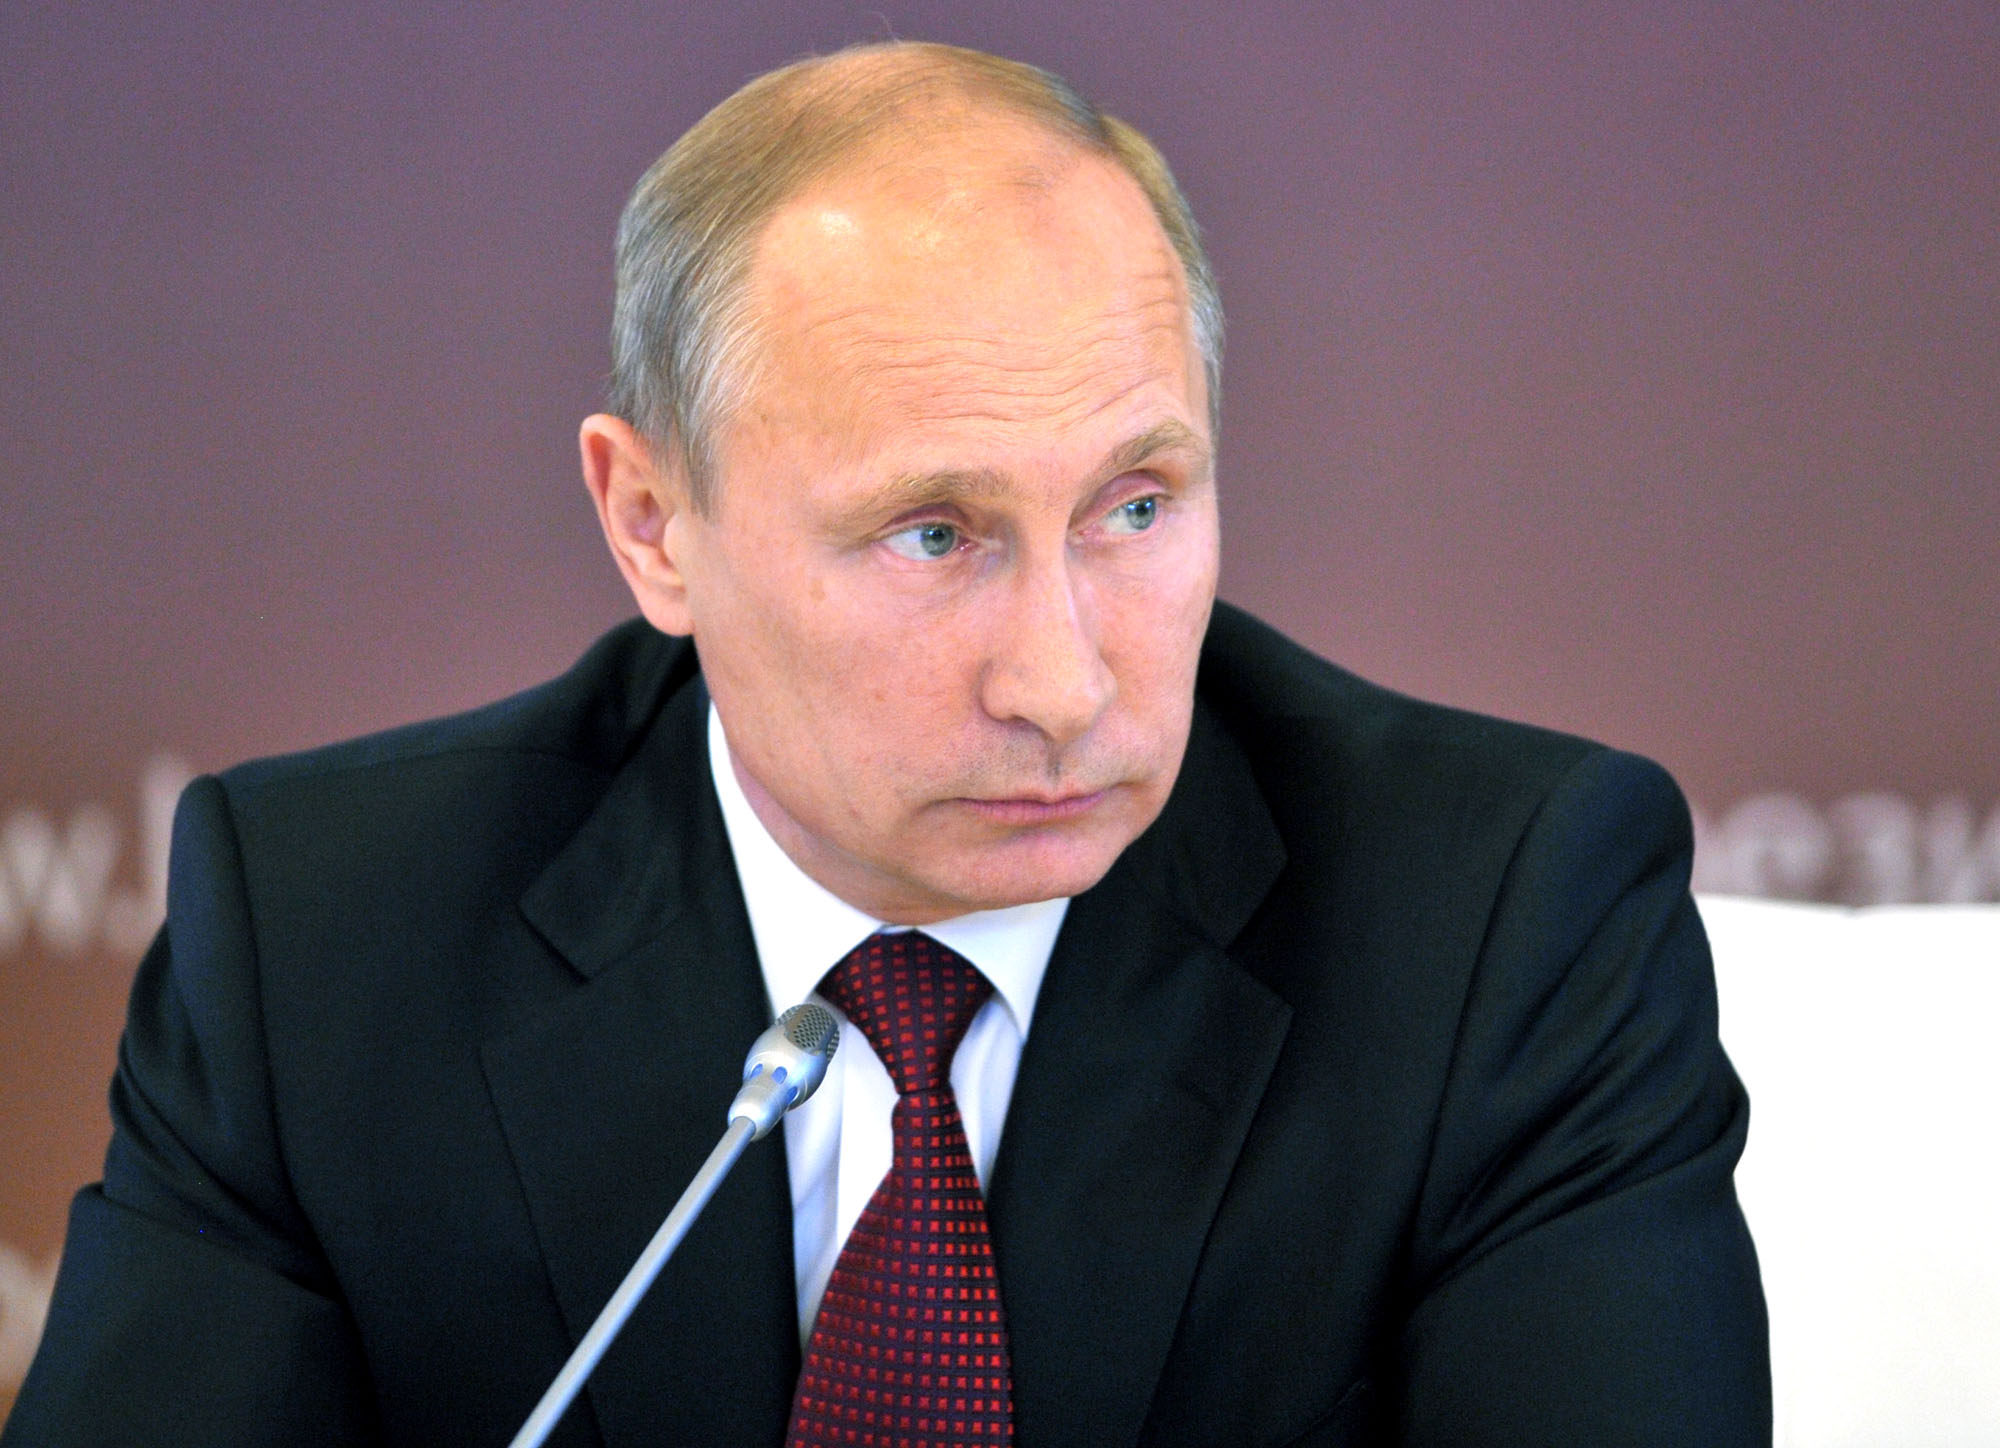  Sondaggio in Russia: Putin, oggi lo voterebbe il 68% della popolazione